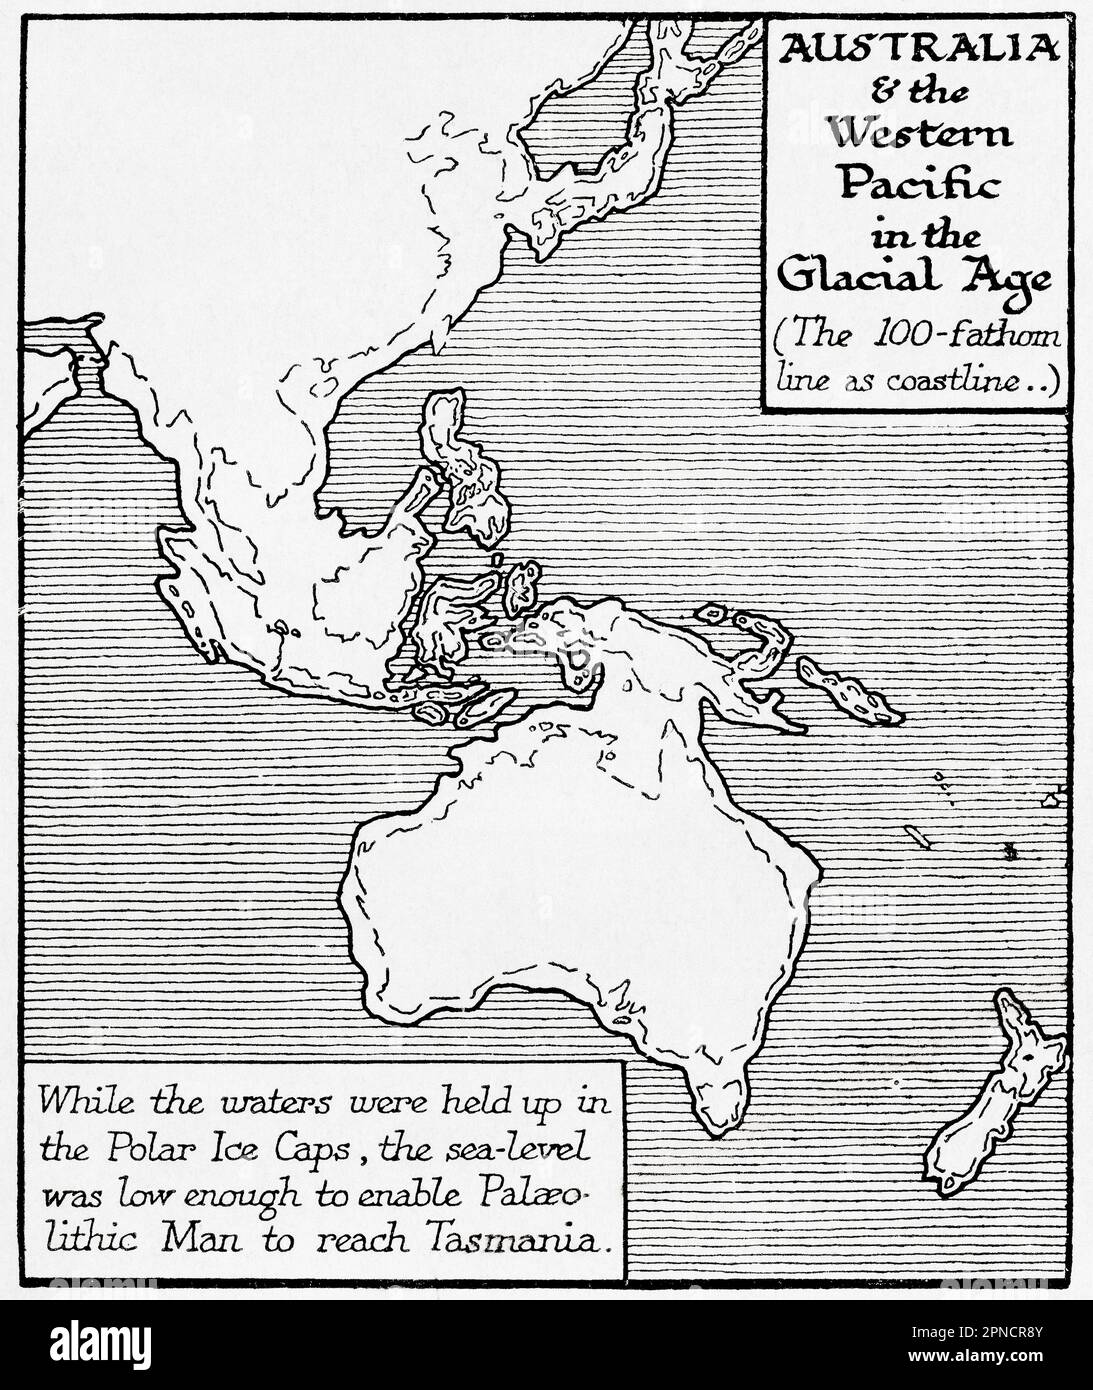 Mappa dell'Australia e del Pacifico occidentale nell'era glaciale. Mentre le acque sono state trattenute nei tappi di ghiaccio Polar, il livello del mare era abbastanza basso da permettere all'uomo paleolitico di raggiungere la Tasmania. Dal libro Outline of History di H.G. Wells, pubblicato nel 1920. Foto Stock